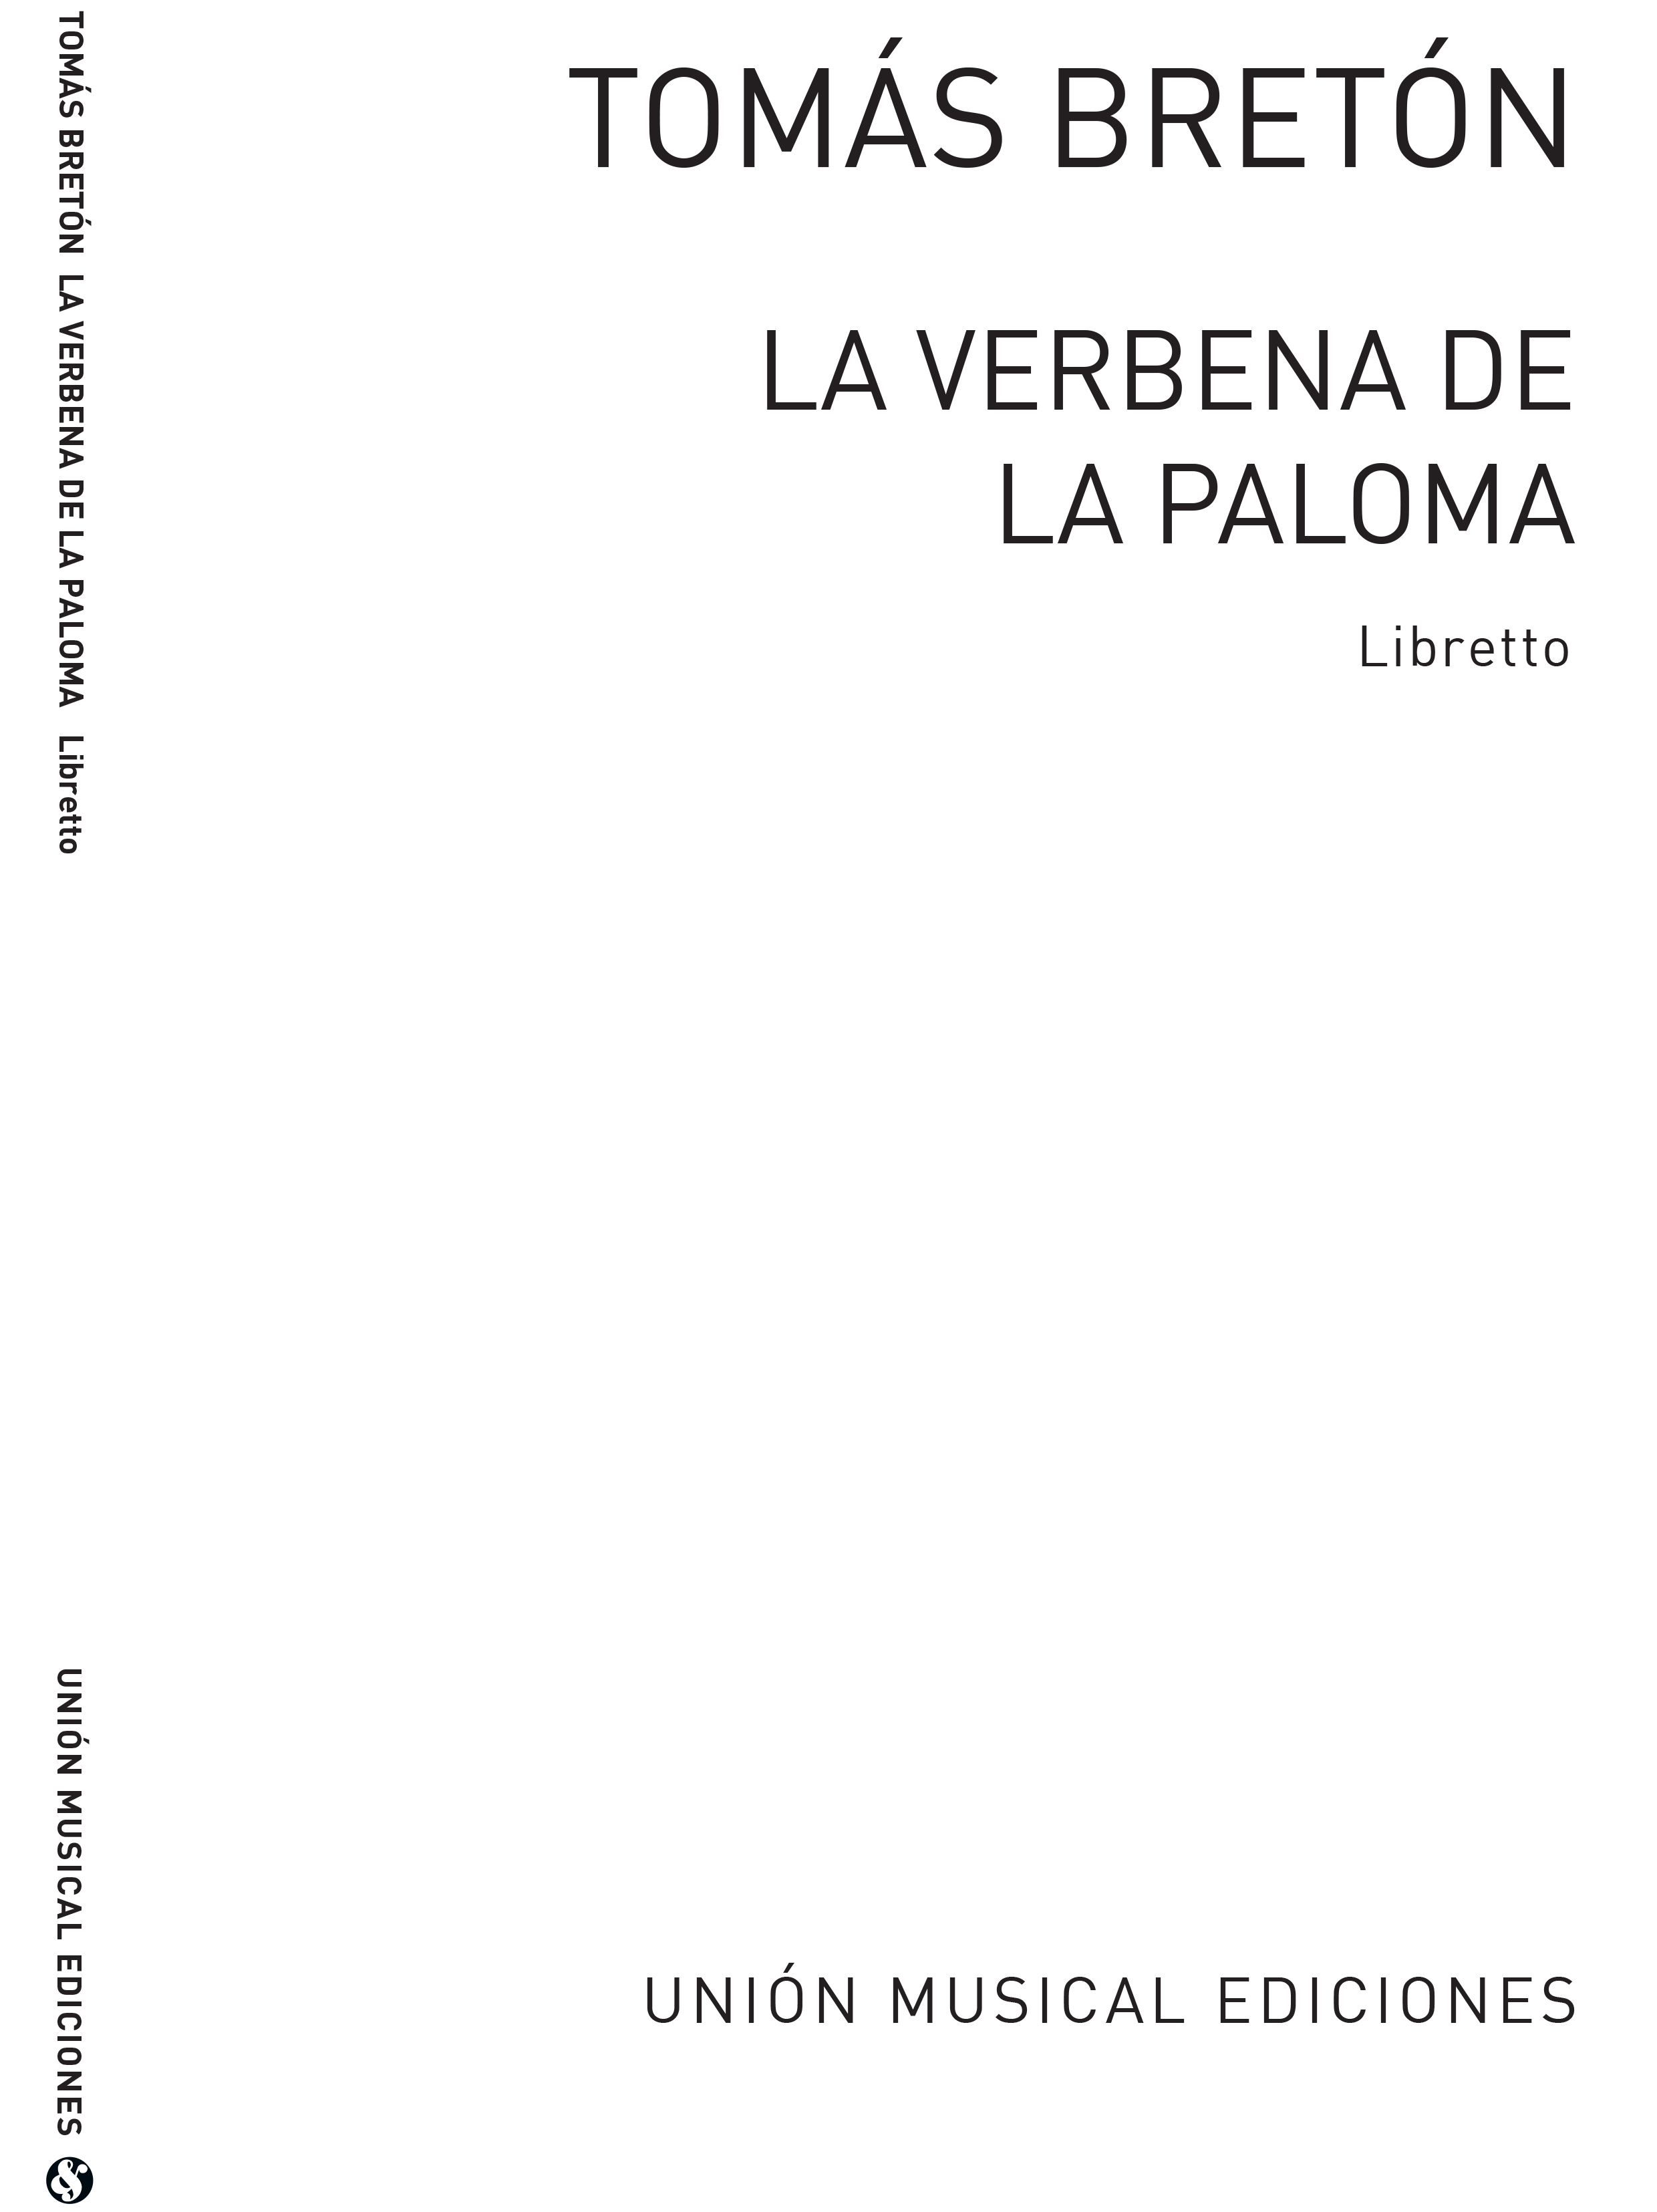 Breton: La Verbena De La Paloma (Libretto)